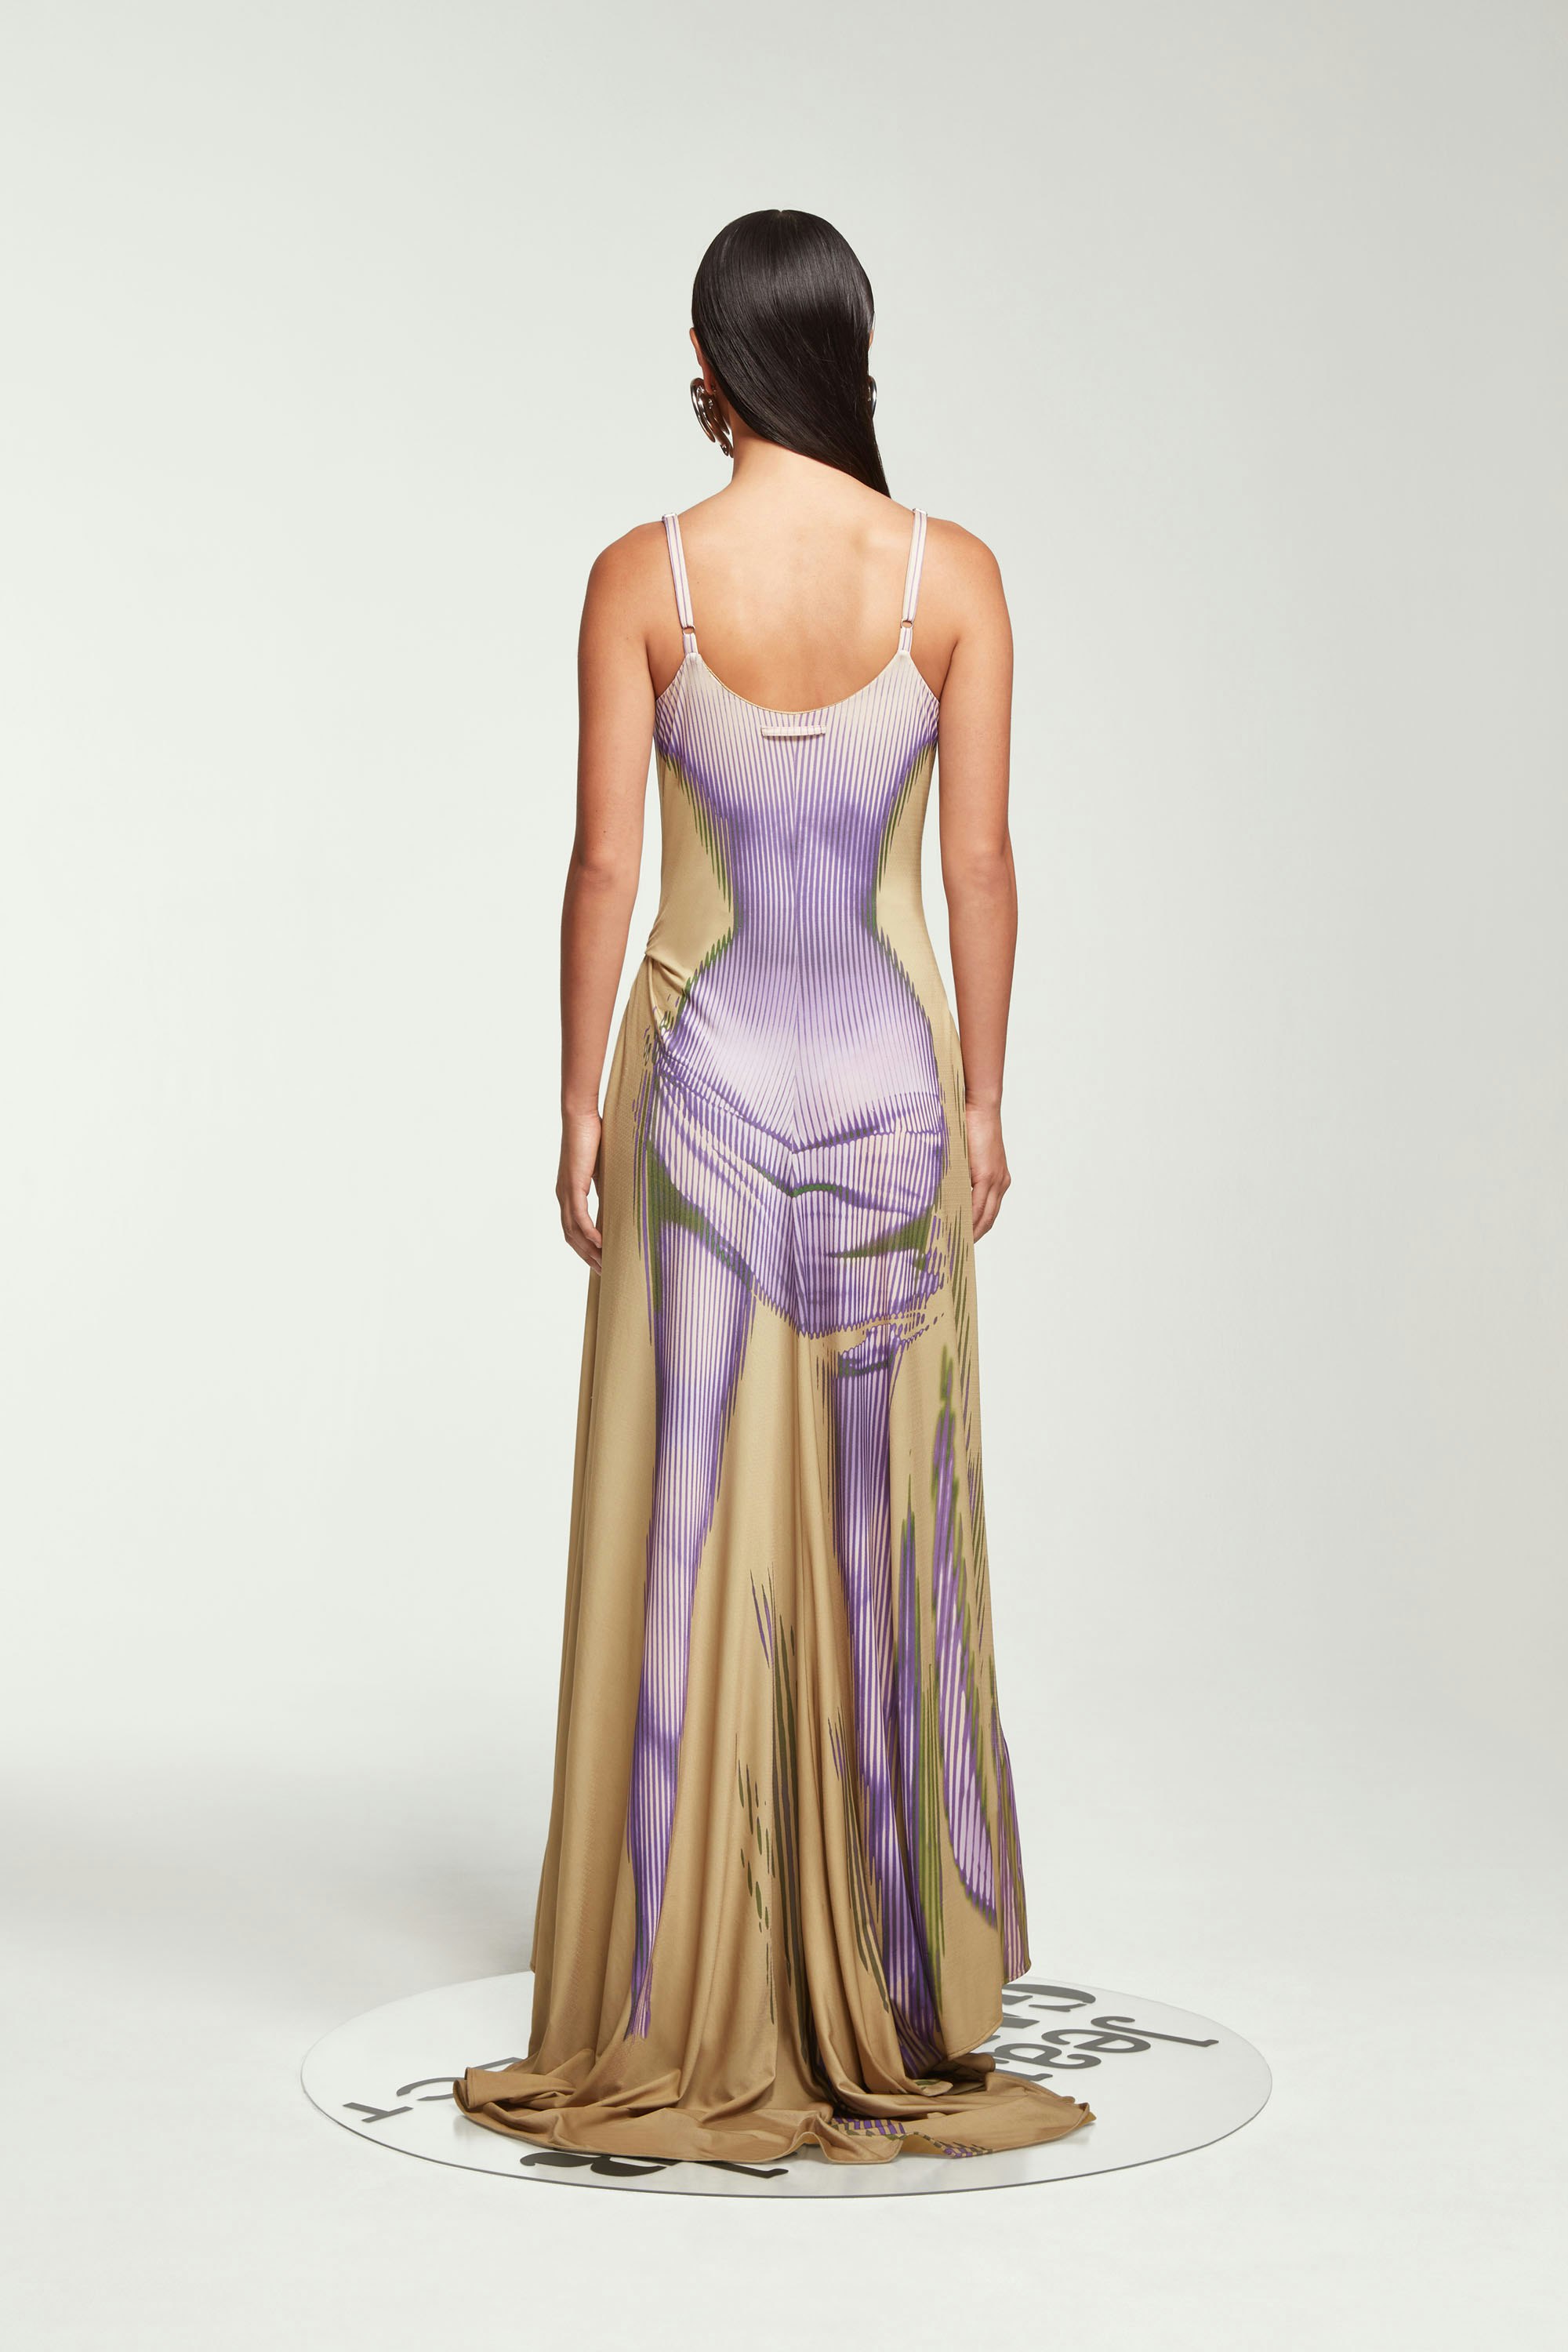 The Purple & Beige Body Morph Sleeveless Dress by Jean Paul Gaultier x Y/Project